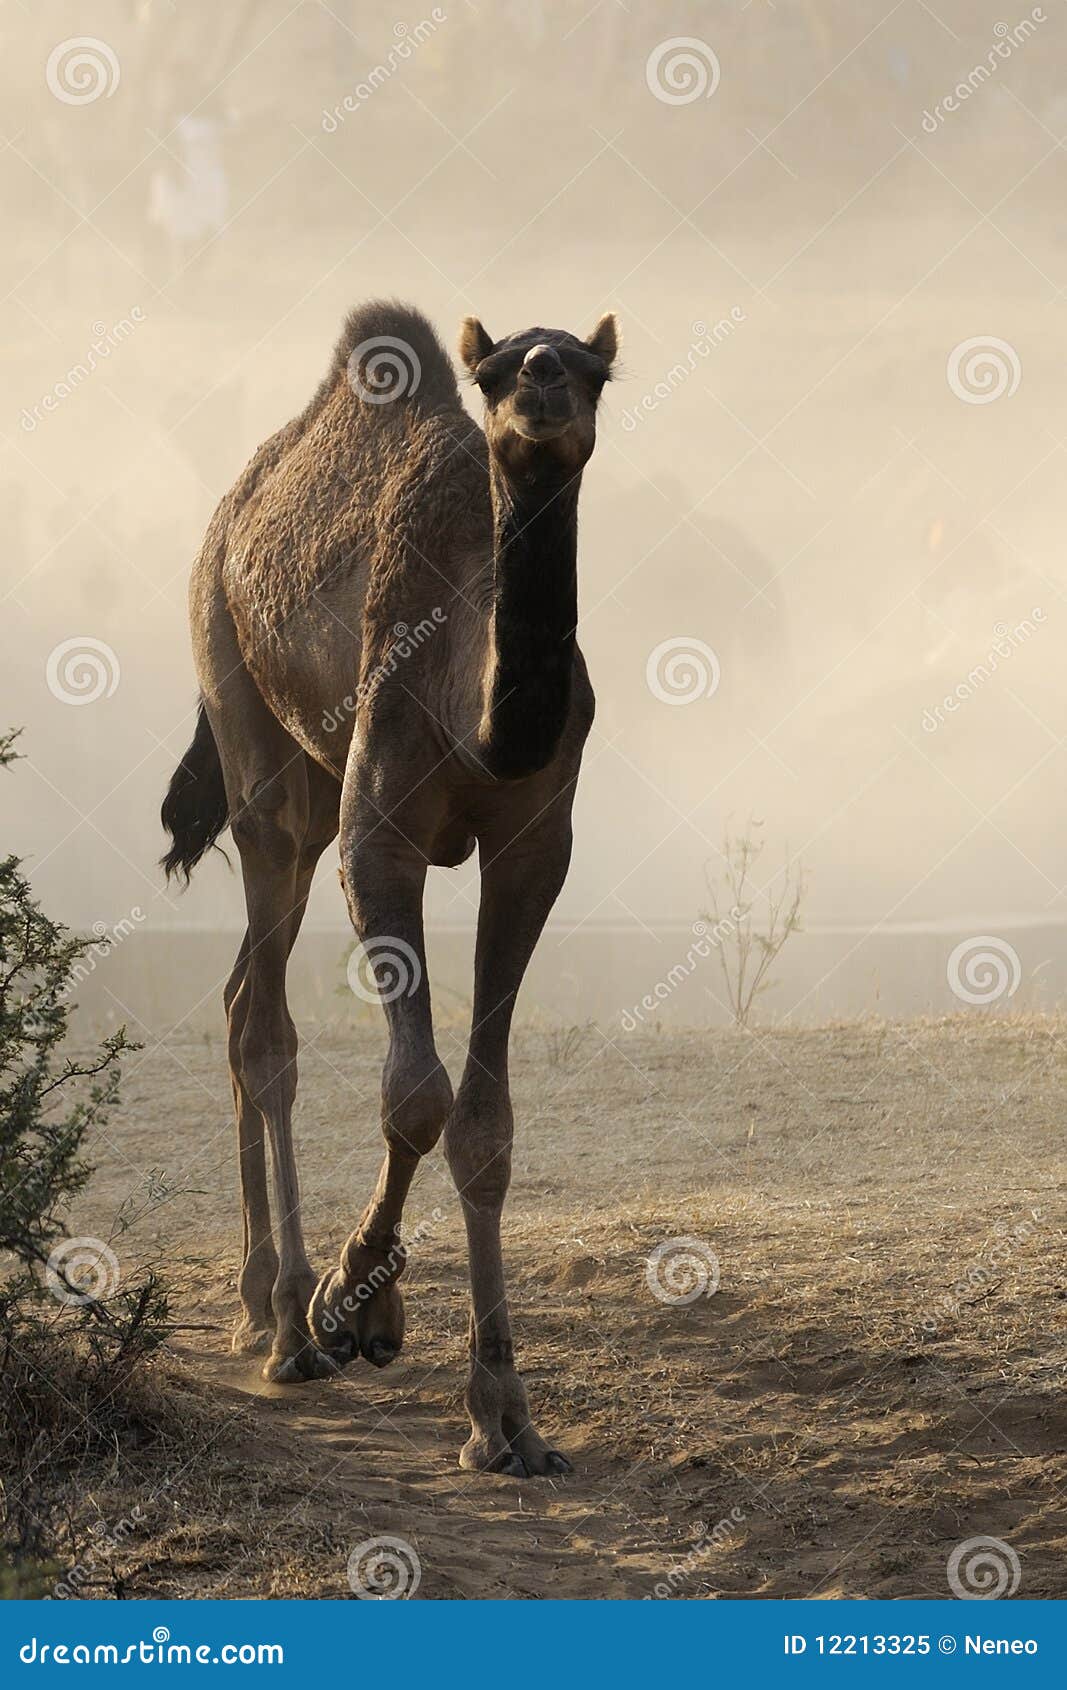 dromedary camel calf